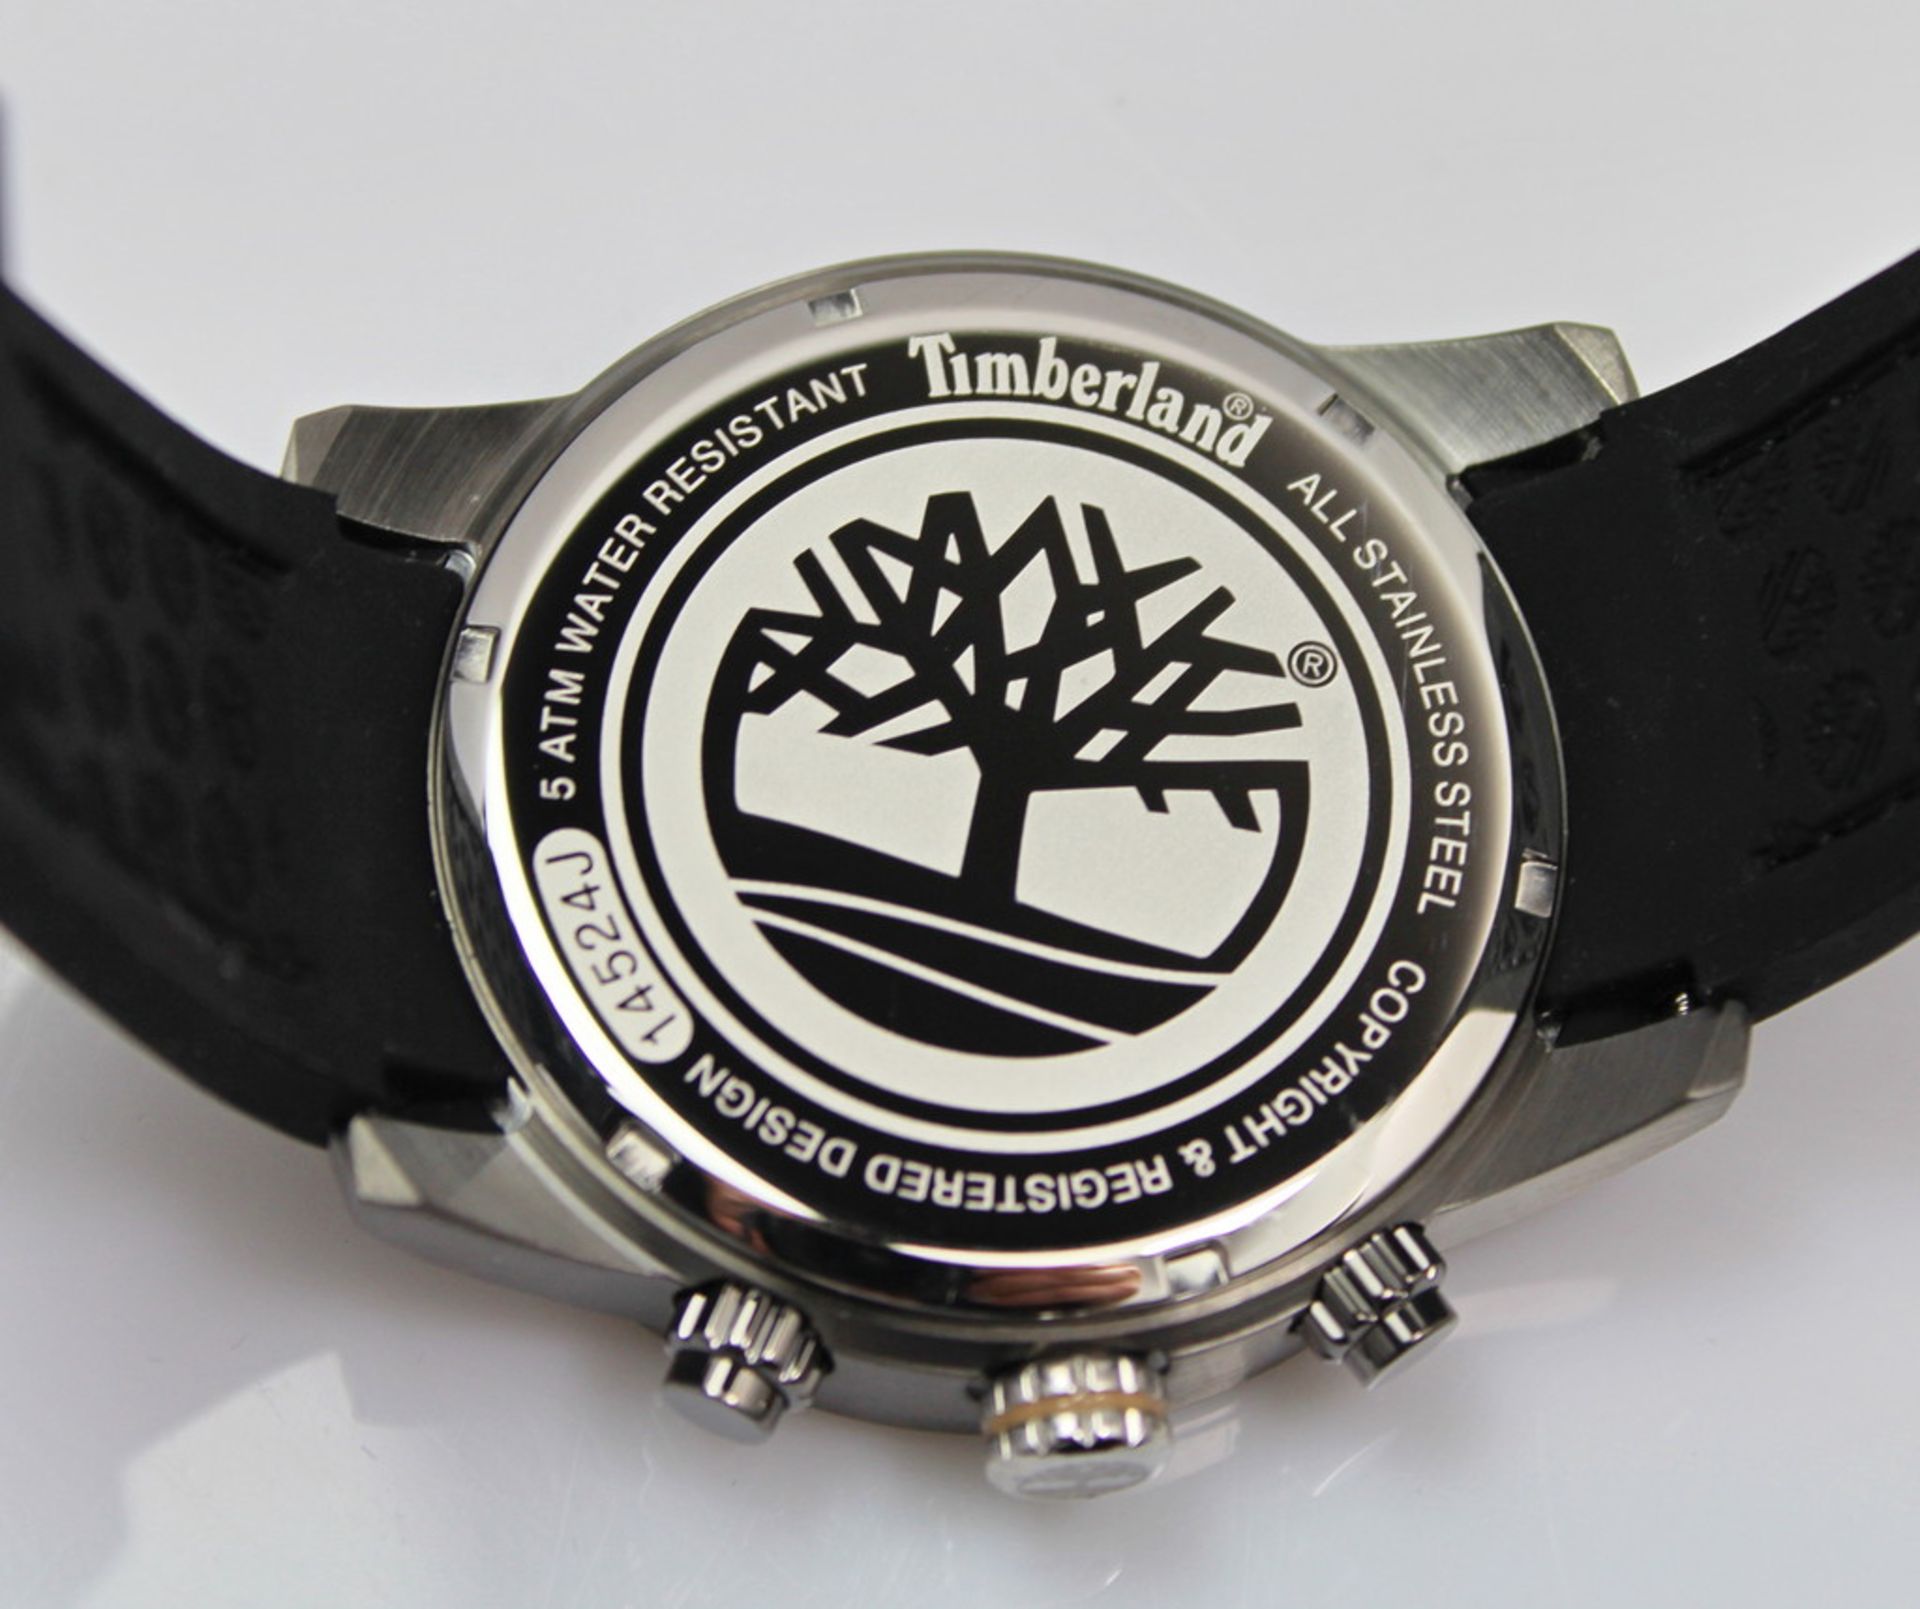 Timberland TBL14524JSU/02AP Men's Chronograph Watch. High quality chronograph watch New & mint - Bild 2 aus 3